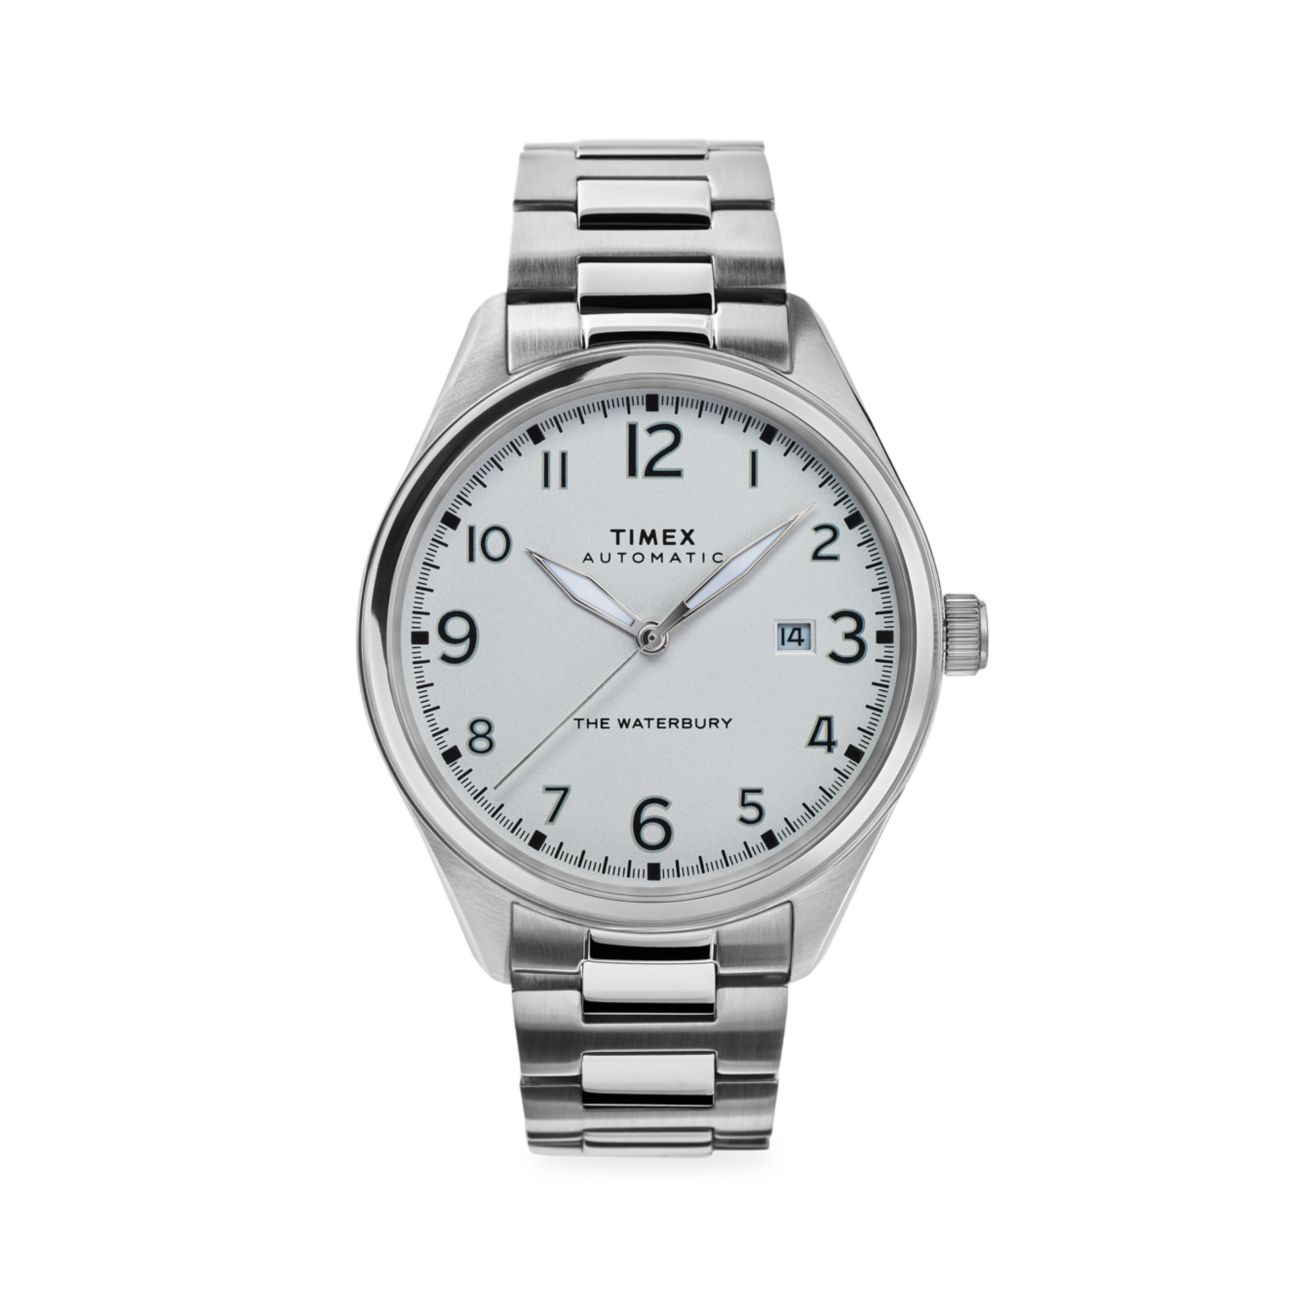 Традиционные автоматические часы Waterbury с браслетом из нержавеющей стали Timex